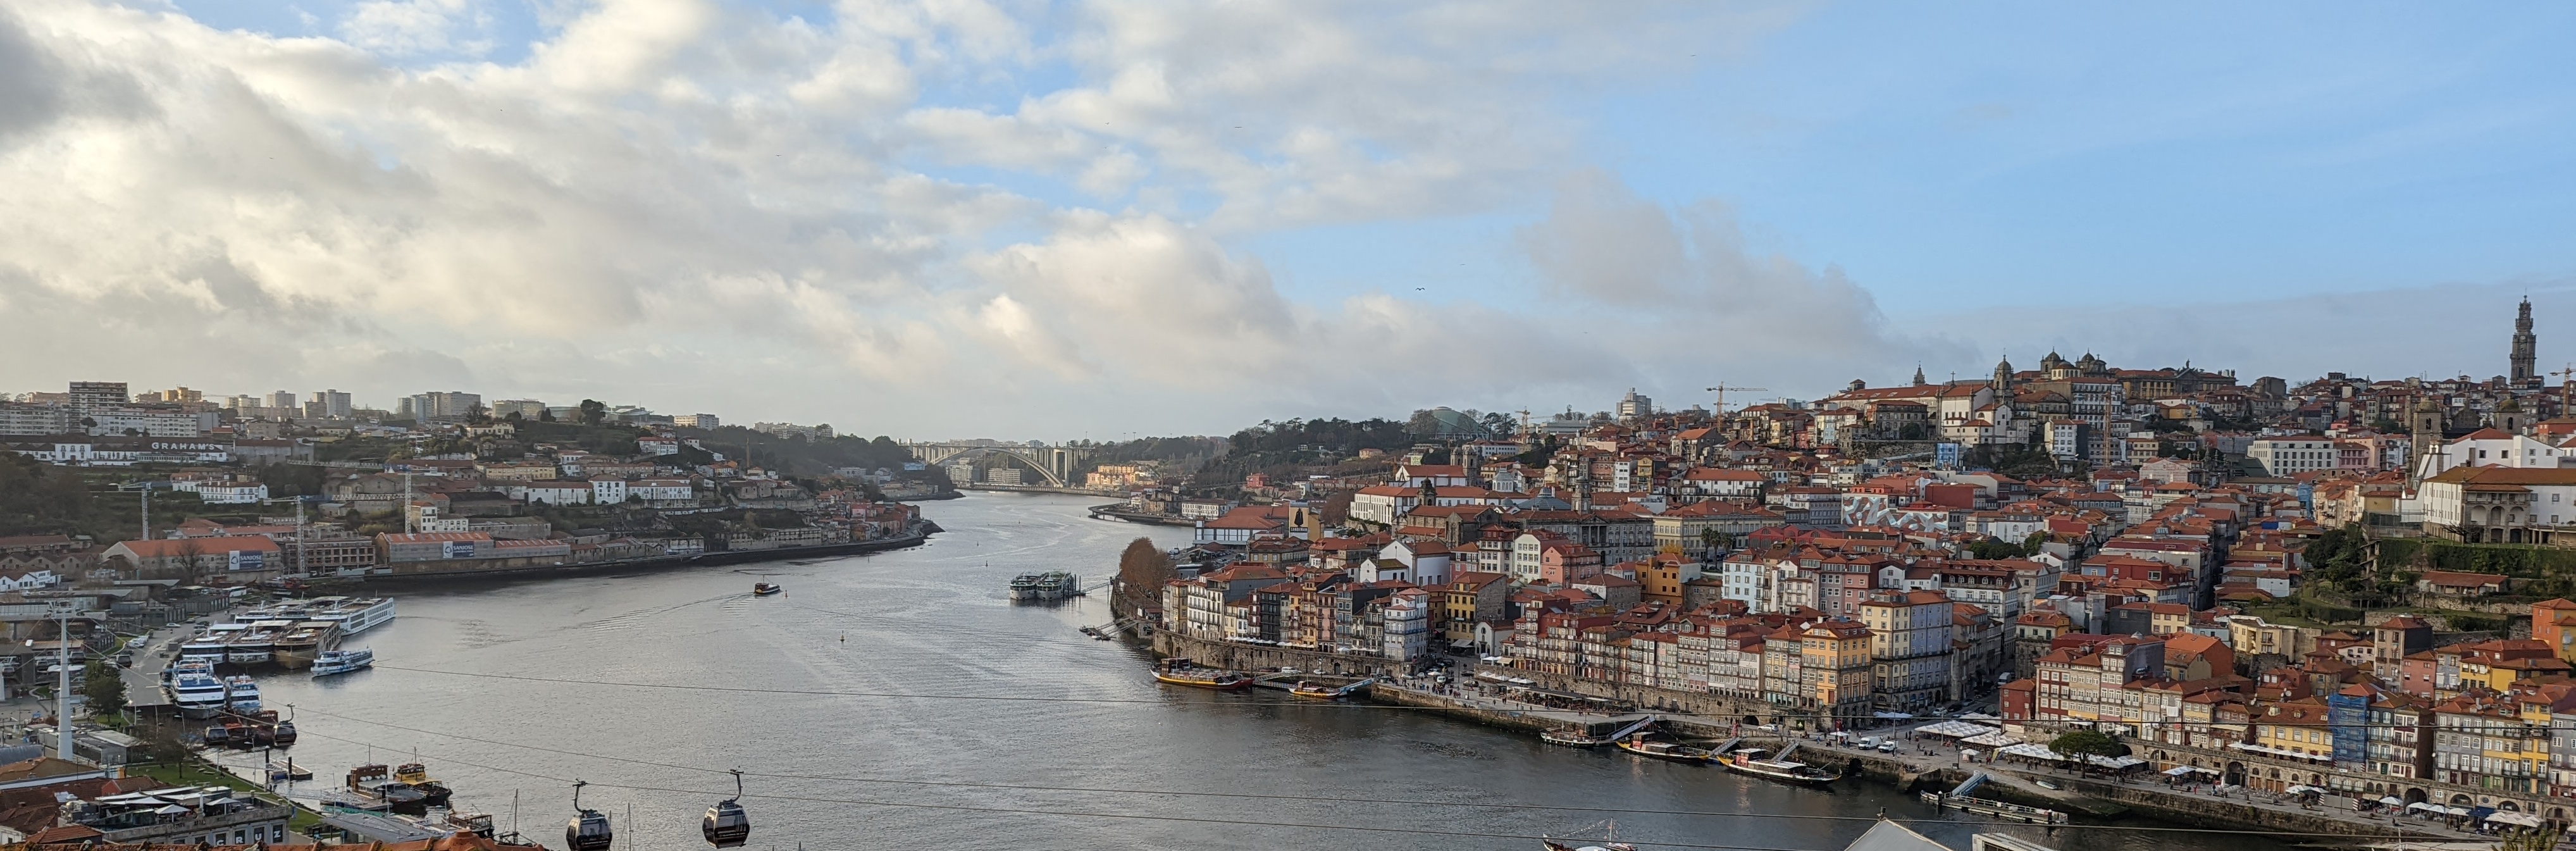 Porto portugal scene